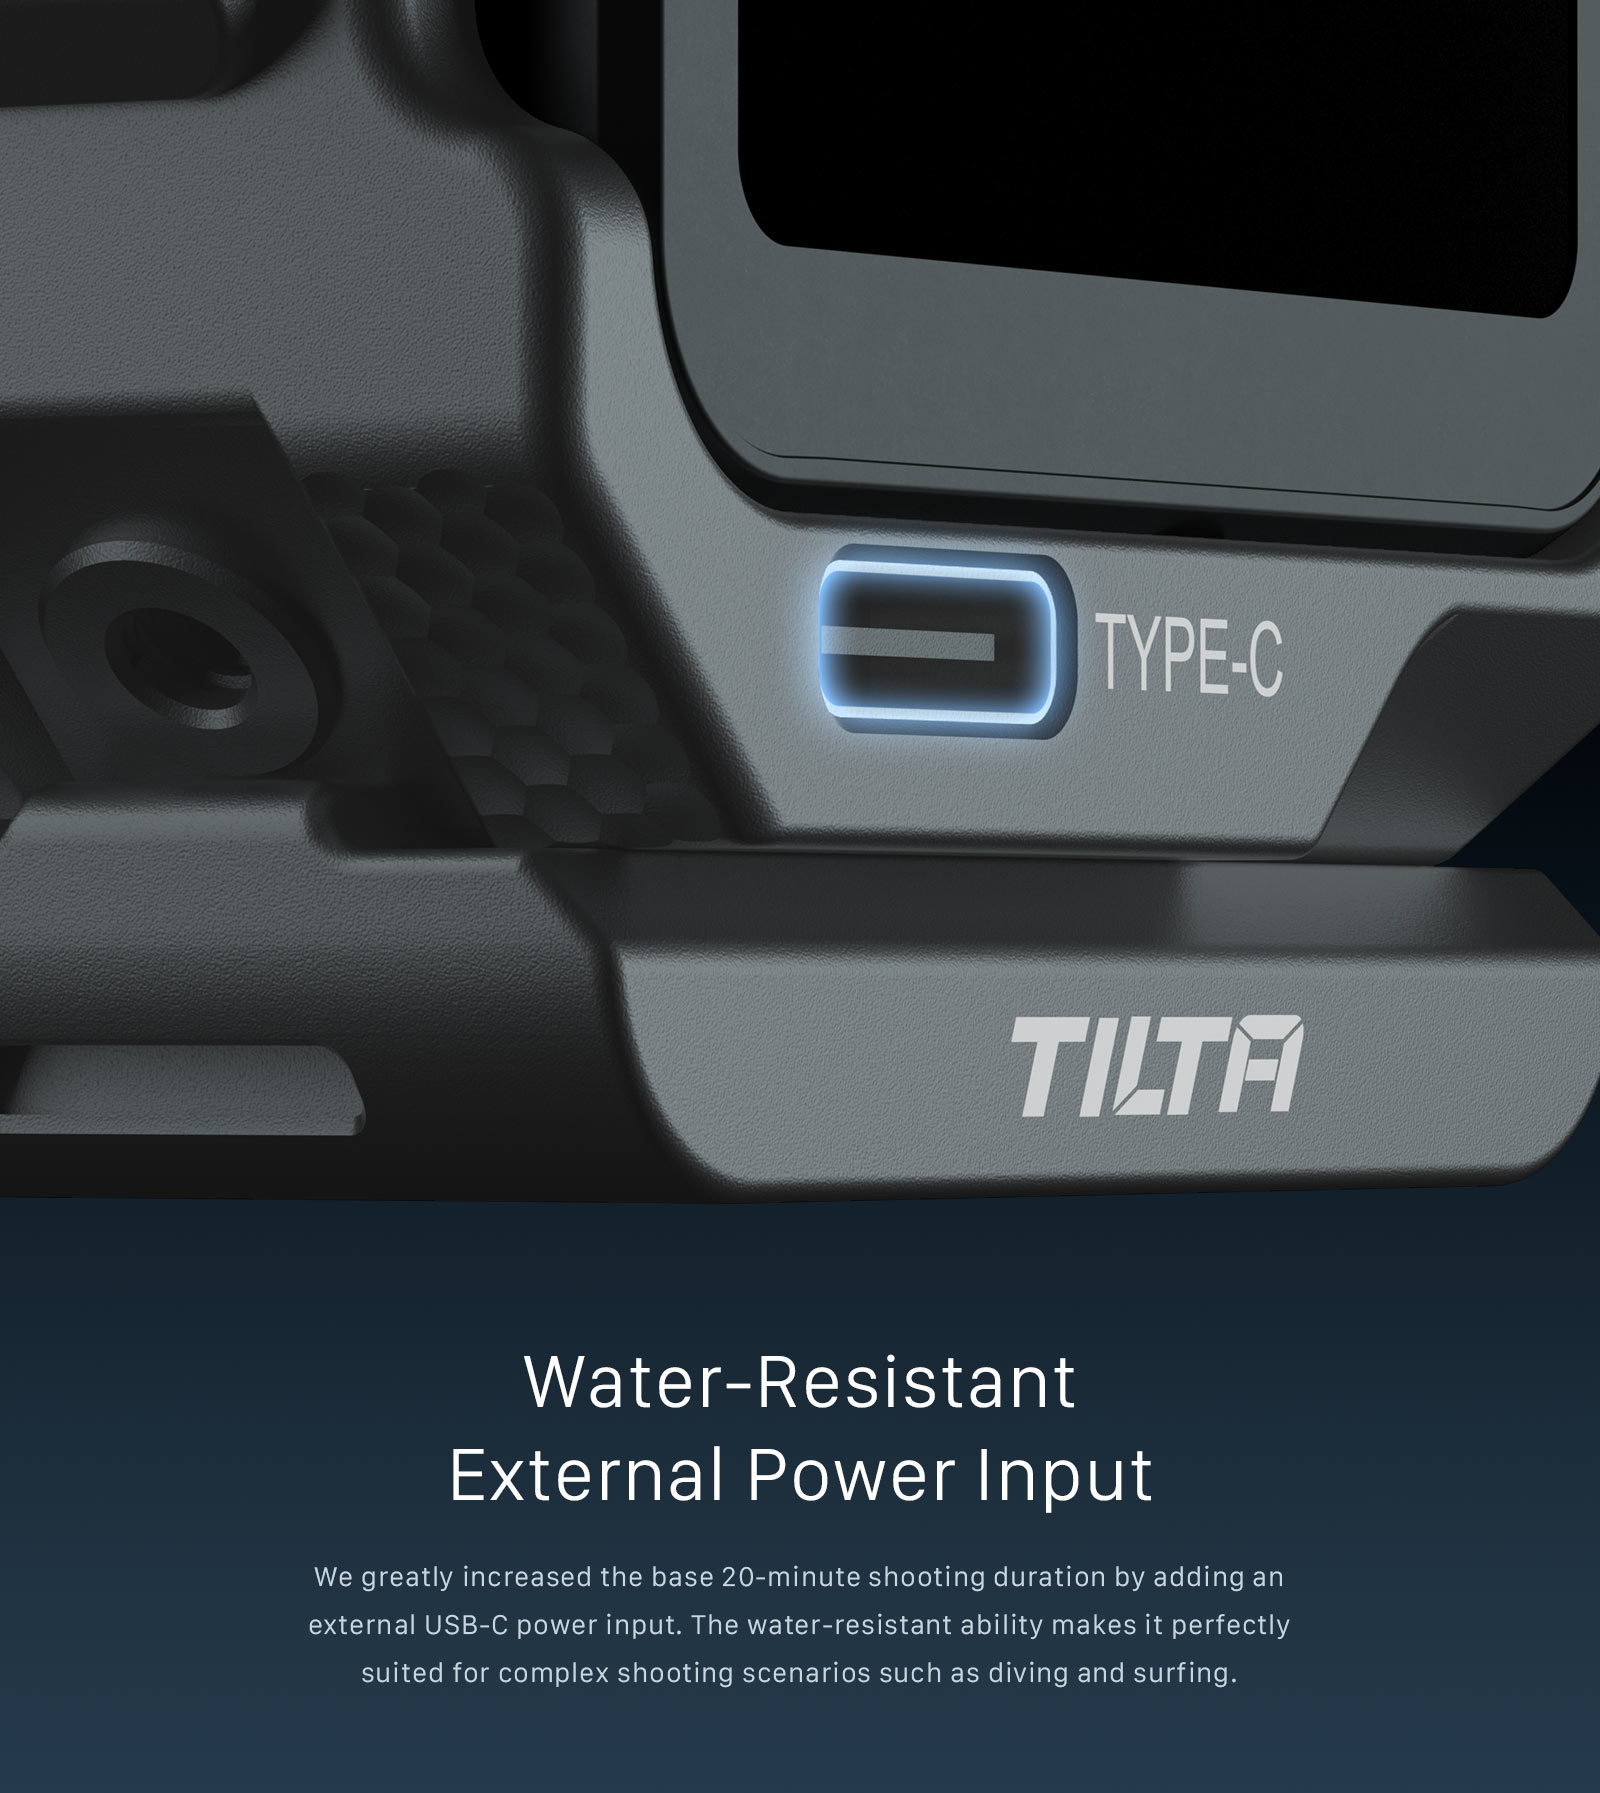 Water-Resistant External Power Input